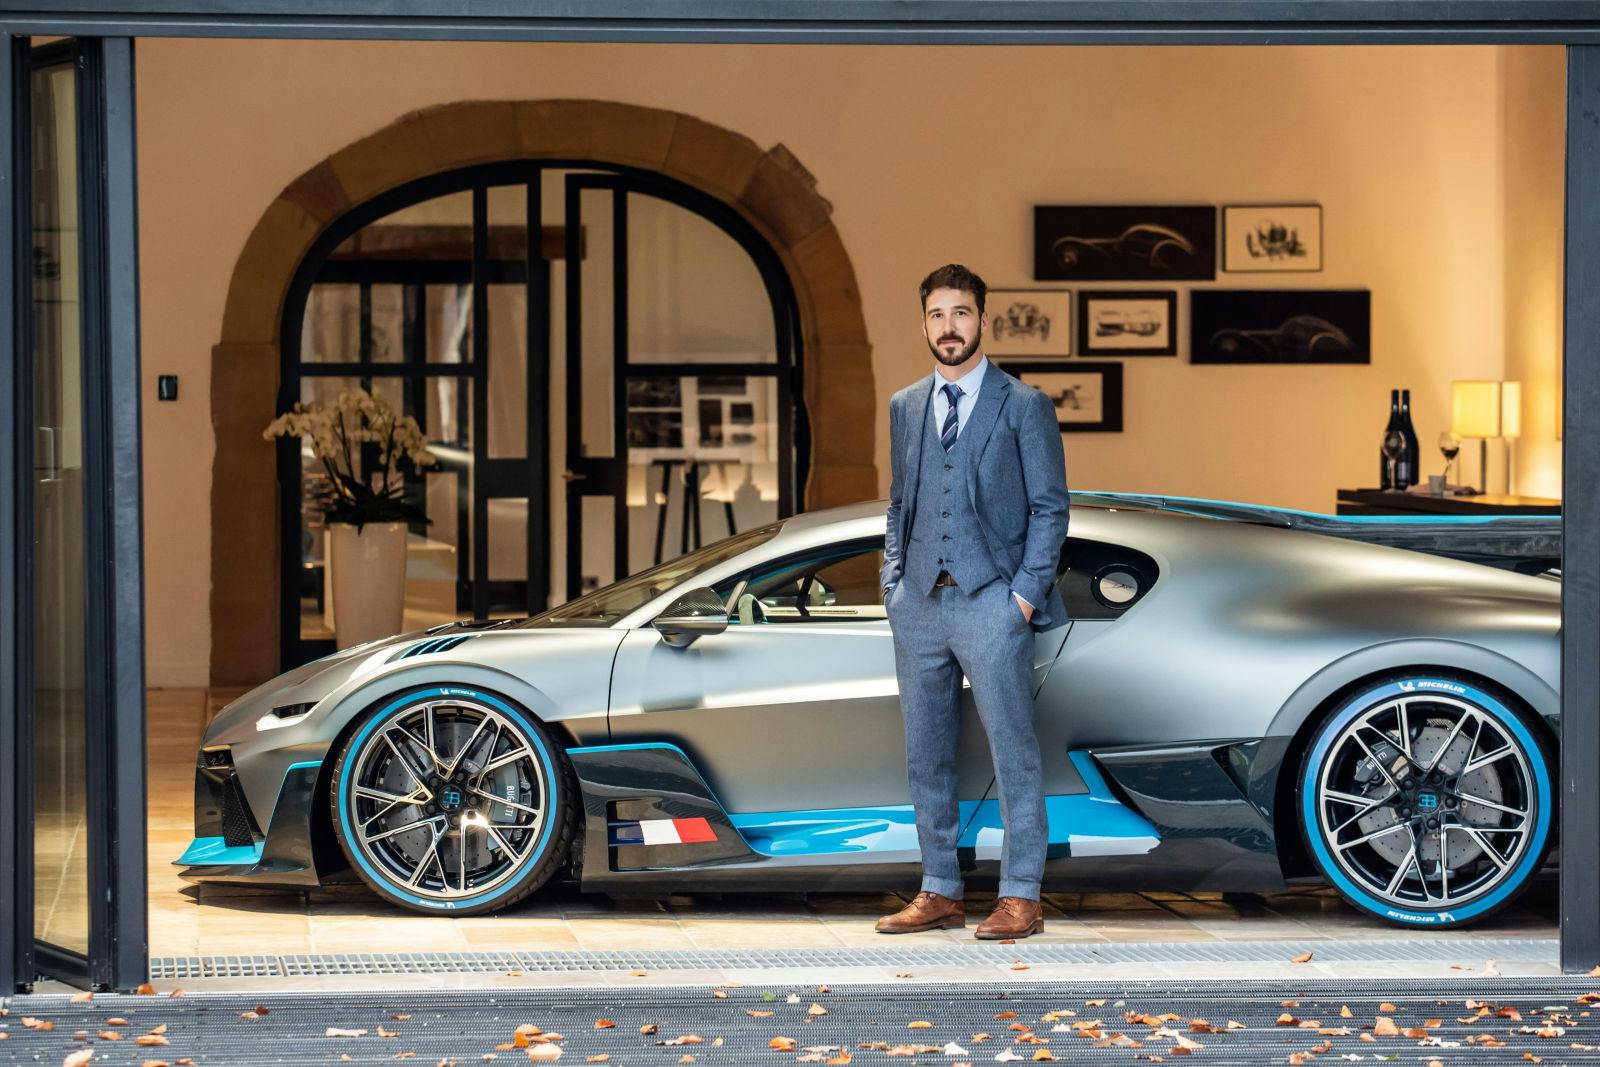 Summer 2019: Paolo Fanucci at the Bugatti headquarters in Molsheim.